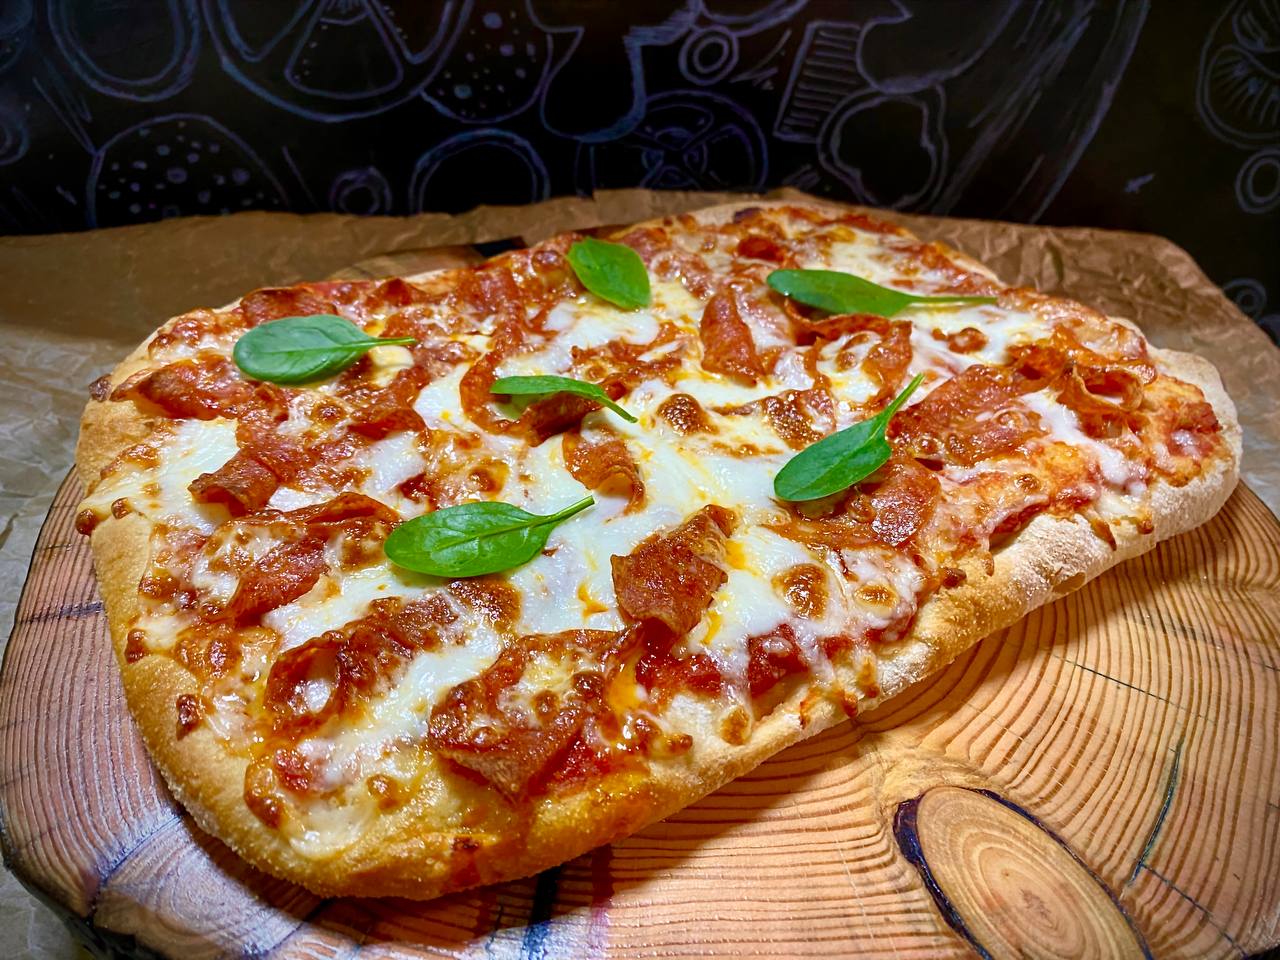 фото пиццы пепперони на столе дома фото 113